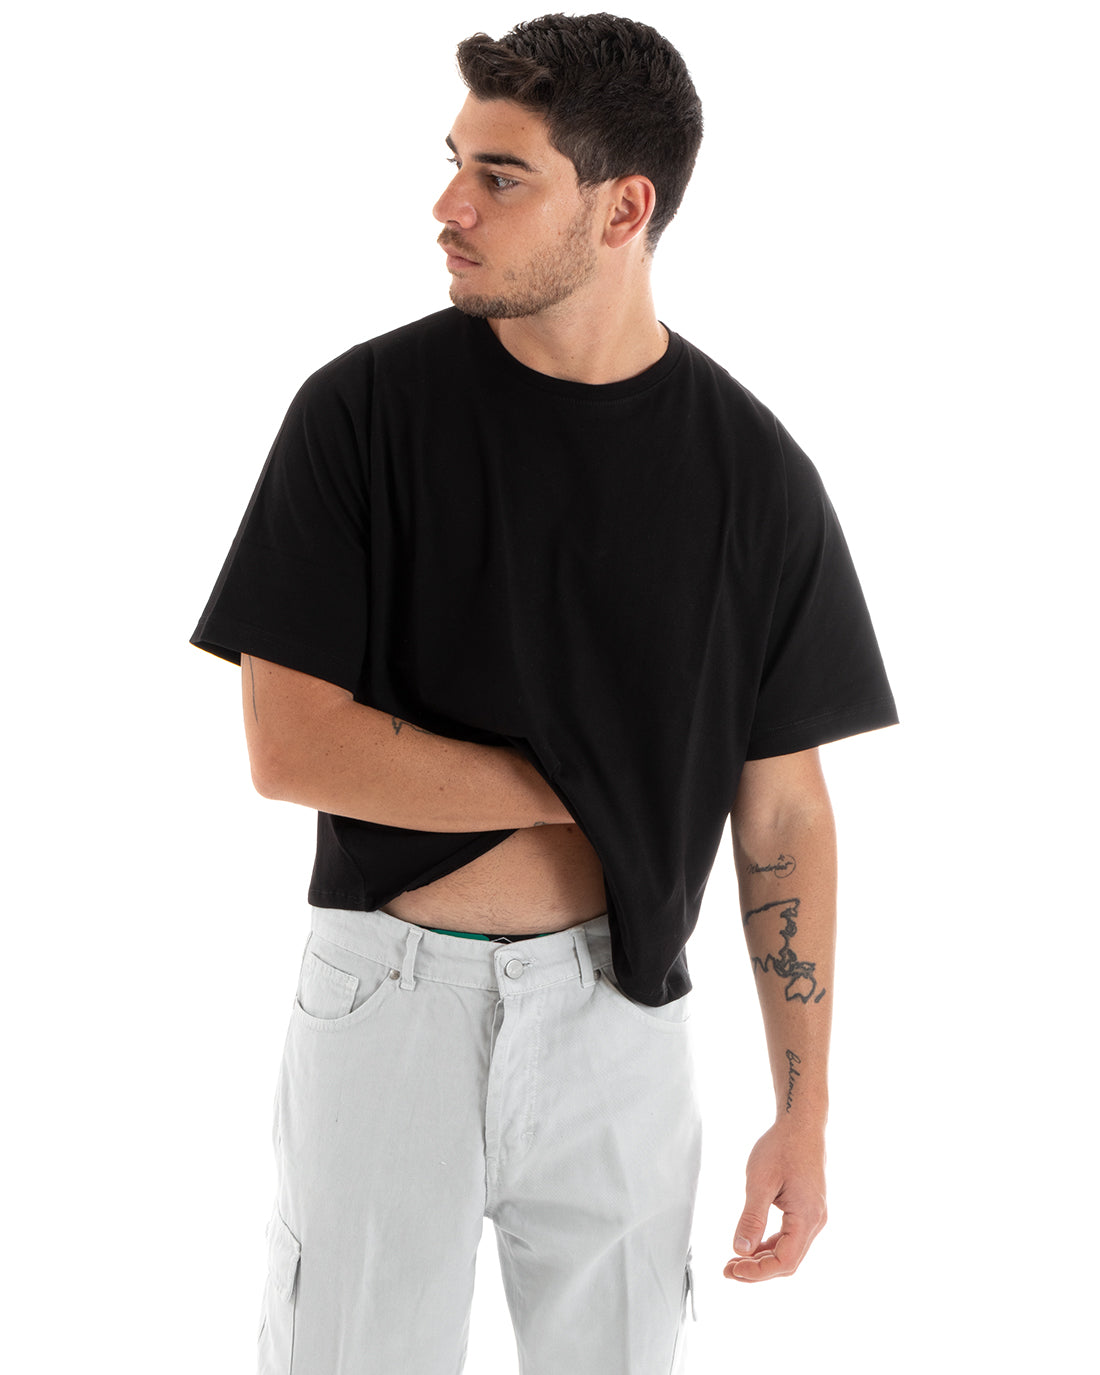 T-shirt Uomo Cropped Oversize Boxy Fit Tinta Unita Corta Nera Casual GIOSAL-TS2879A